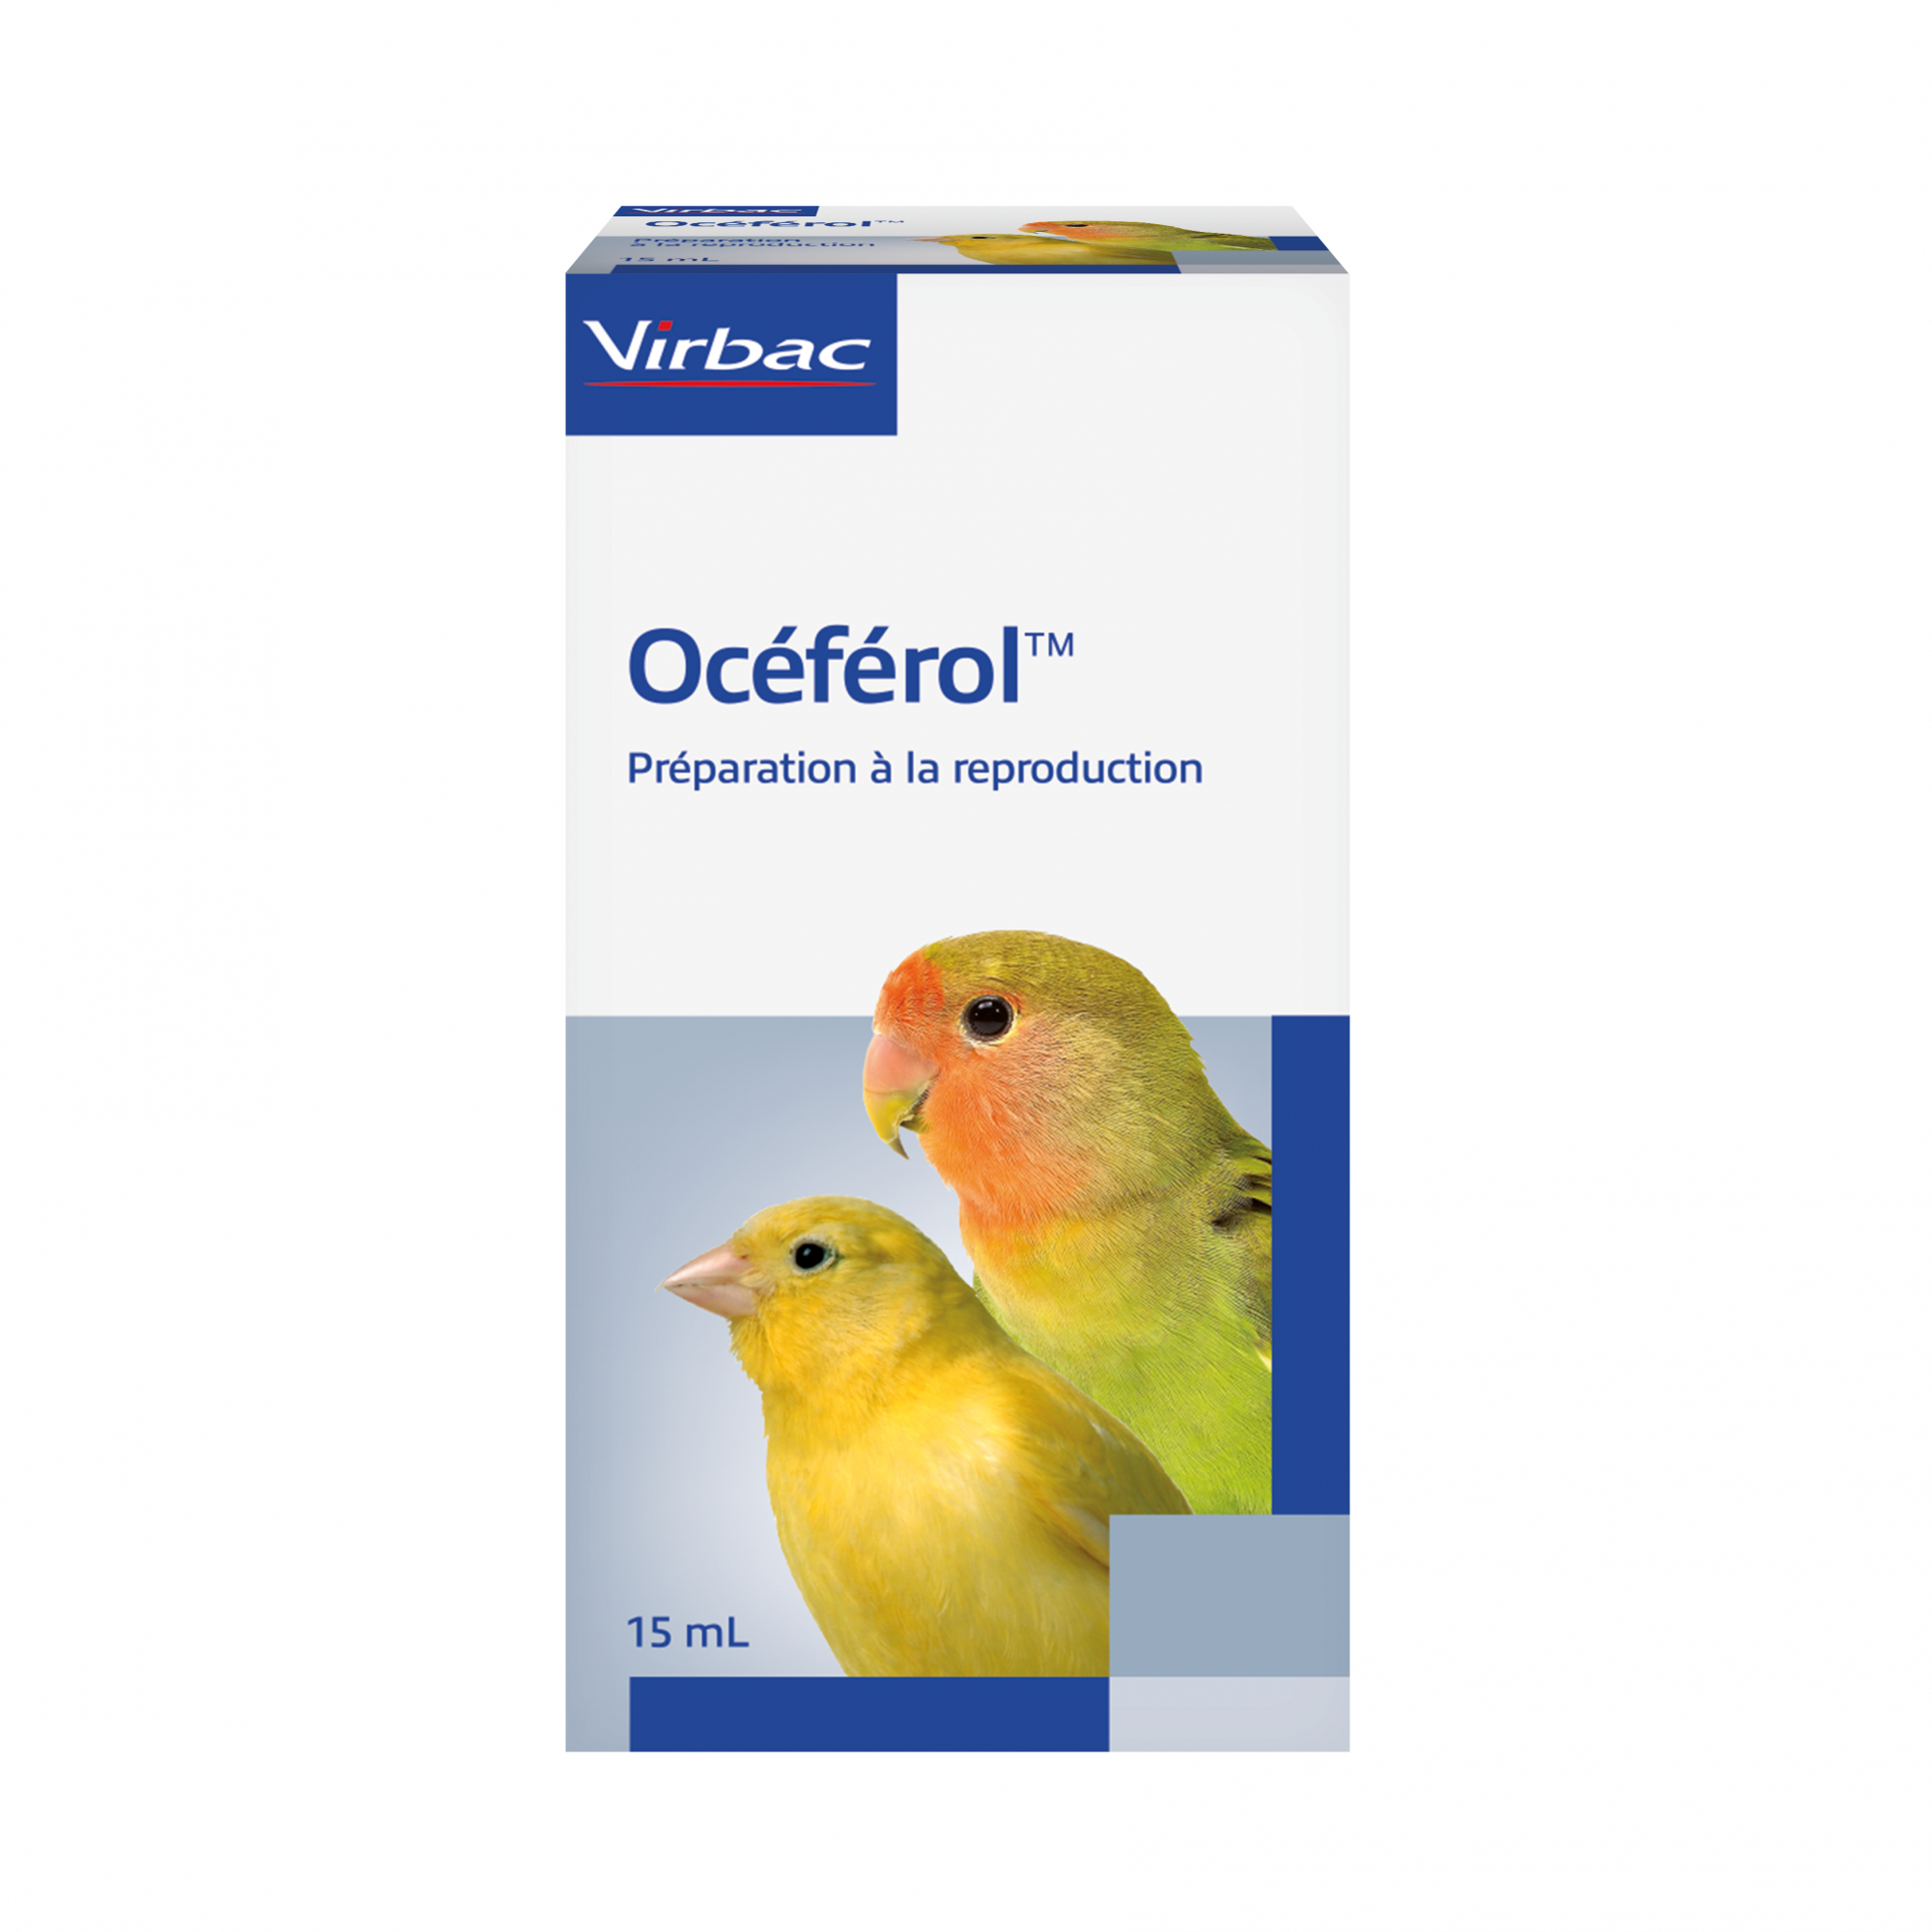 Virbac Oceferol Vitamina E para la reproducción de los pájaros